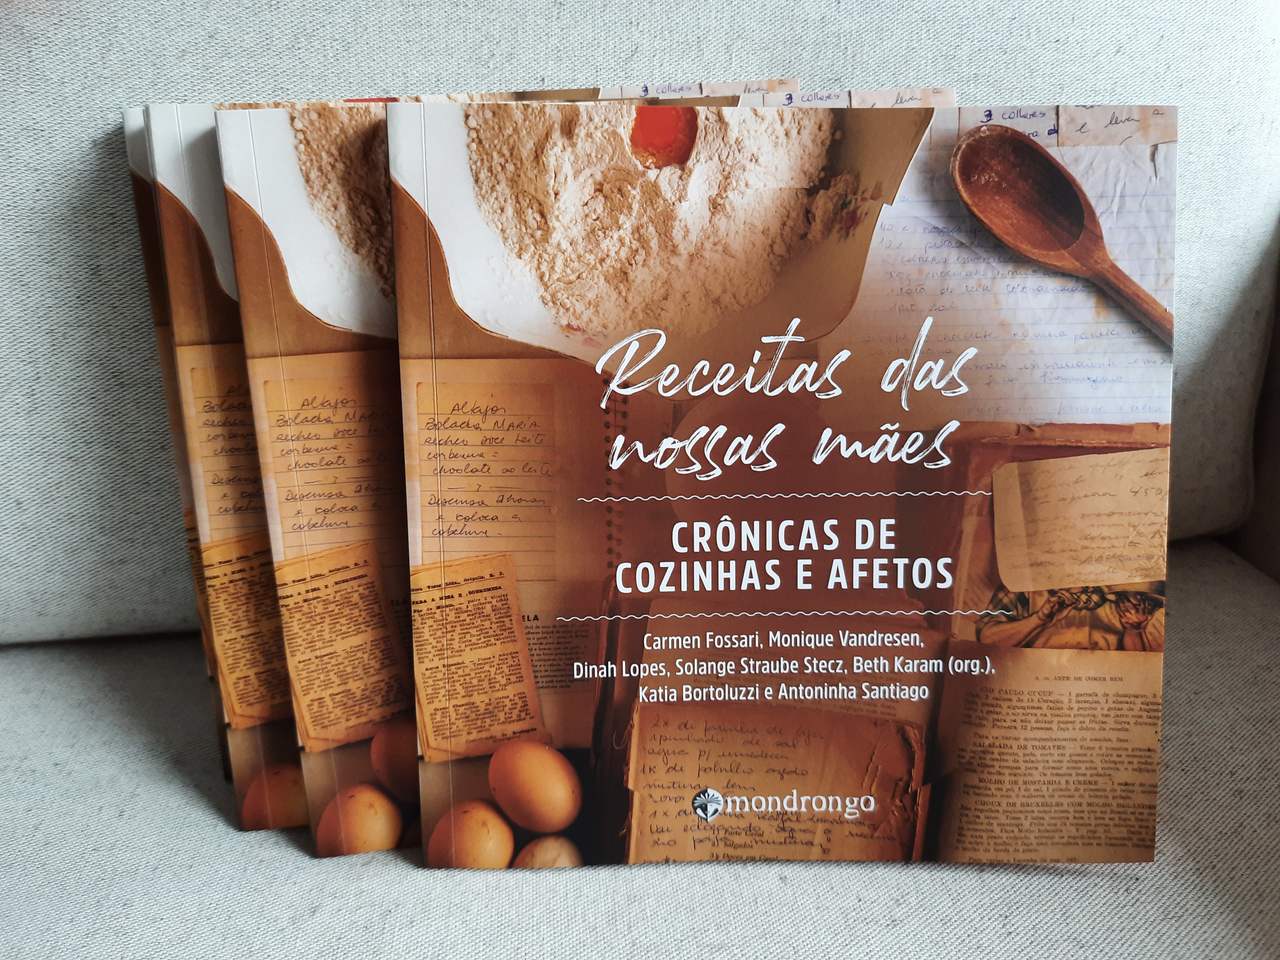 Livro que reúne receitas de família tem lançamento na quinta-feira (07) em Curitiba